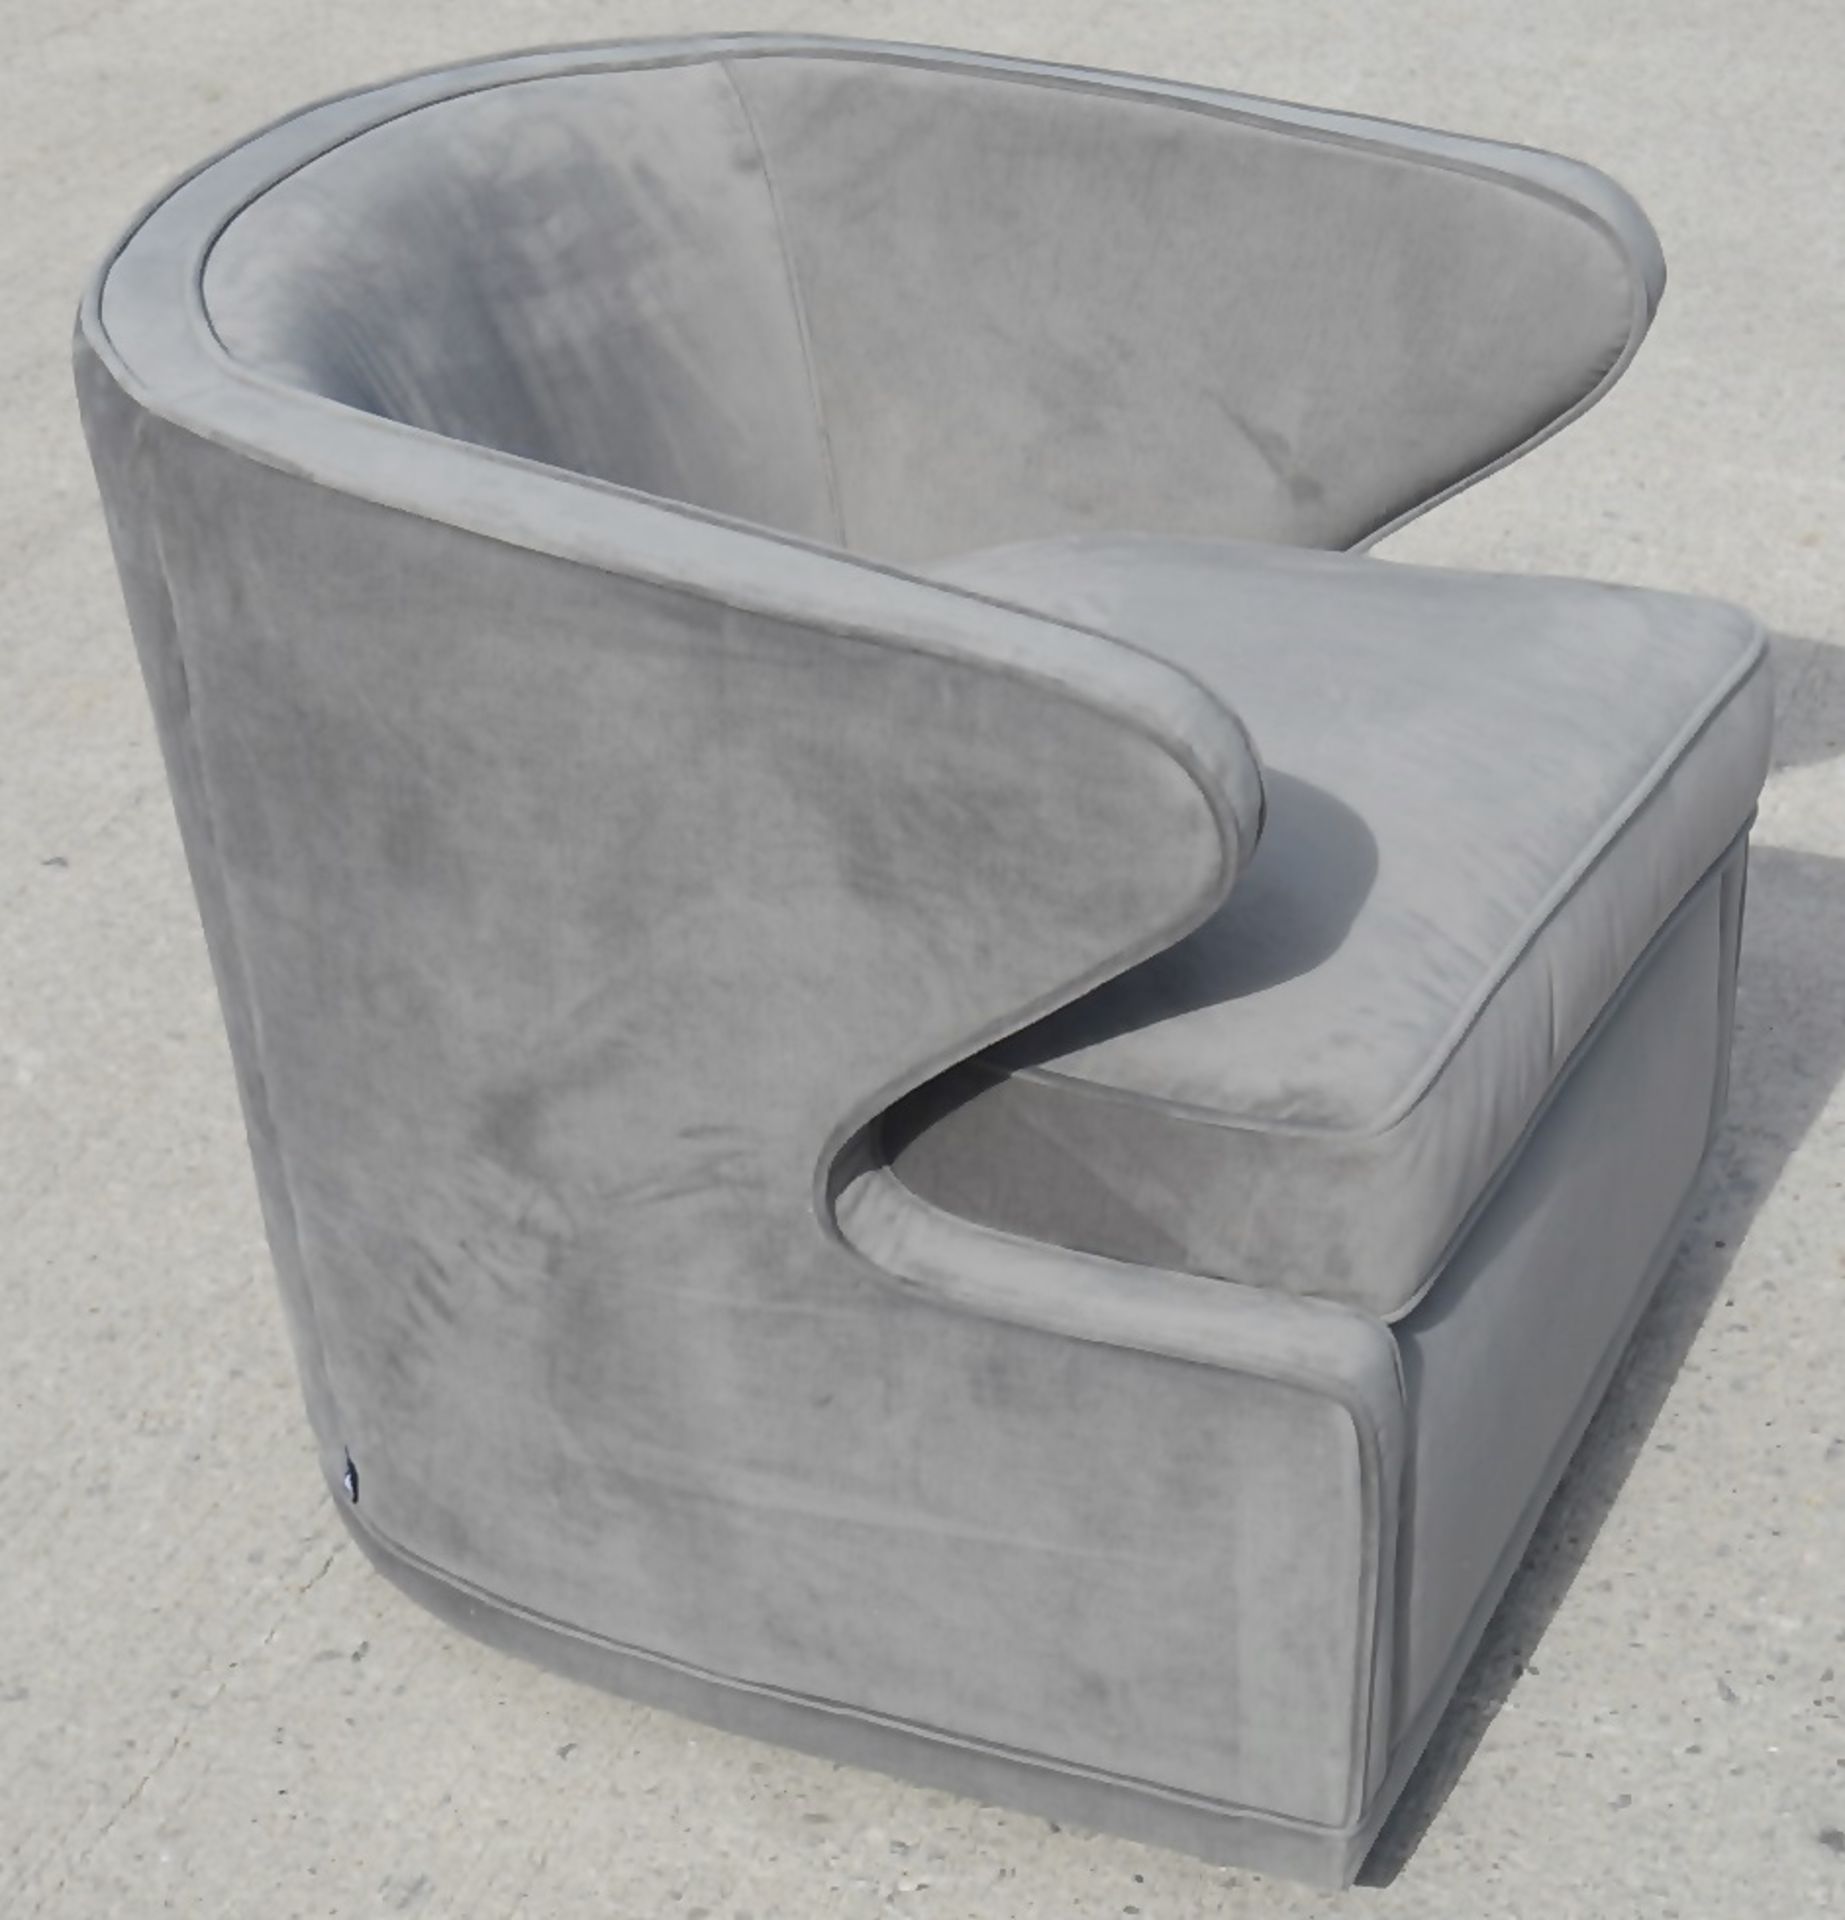 1 x EICHHOLTZ 'Dorset' Velvet Upholstered Chair In Granite Grey With Swivel Base - Ref: 5836384(B)/ - Image 8 of 13